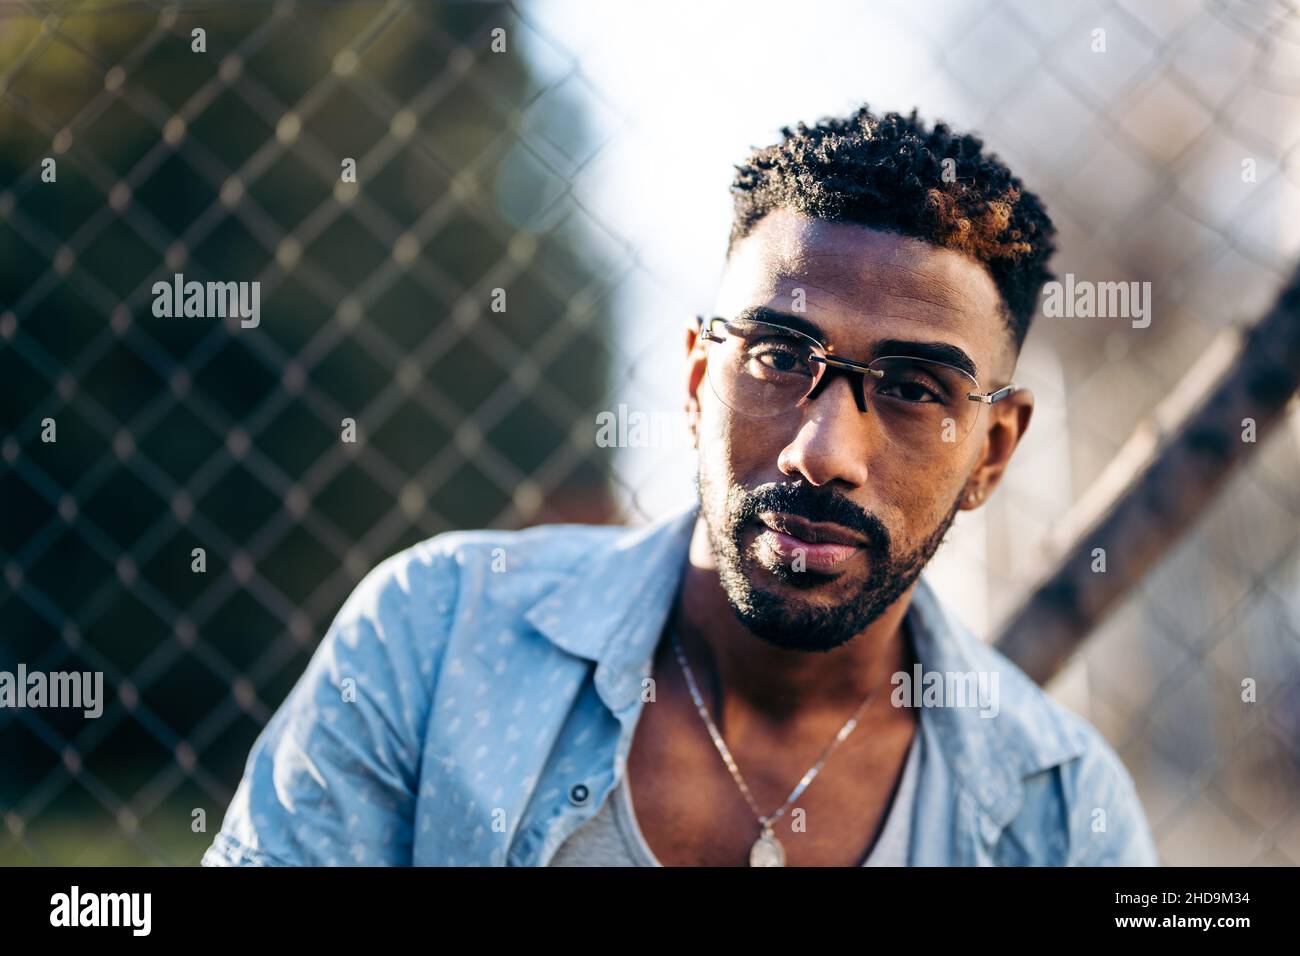 Portrait d'un homme afro-américain avec des lunettes regardant l'appareil photo Banque D'Images